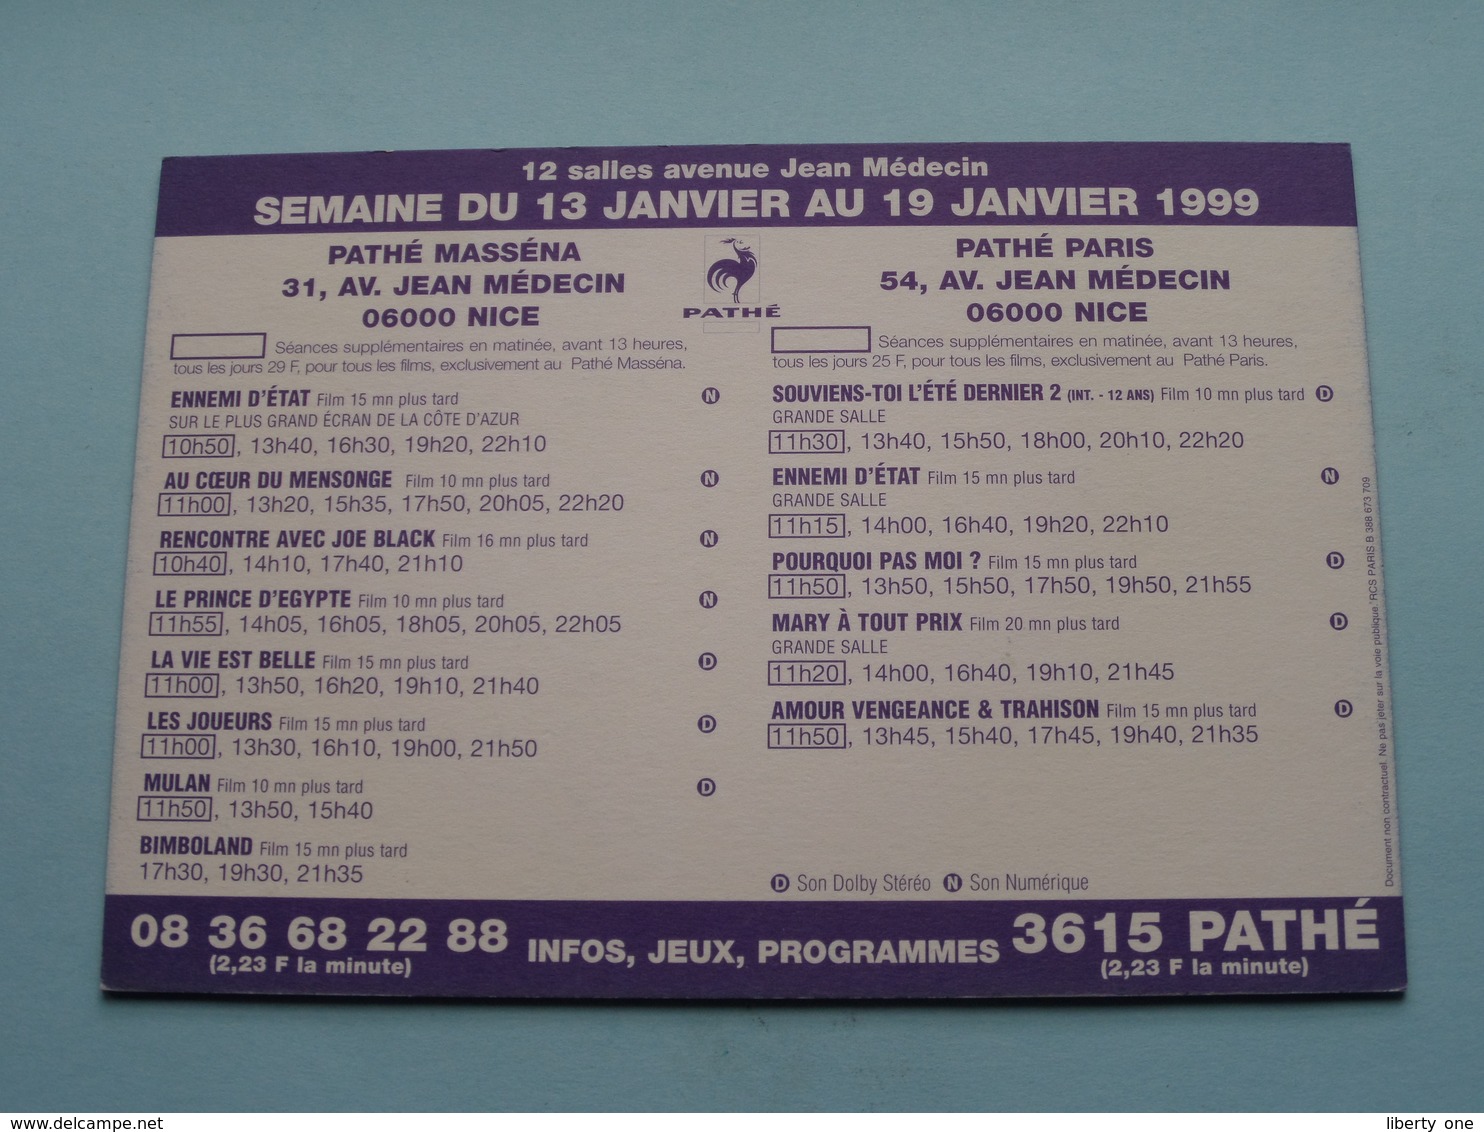 VOUS AVEZ UN MESS@GE > Pathé NICE ( Programme ) 1999 ( Voir Photo > 2 Scan ) ! - Cinema Advertisement